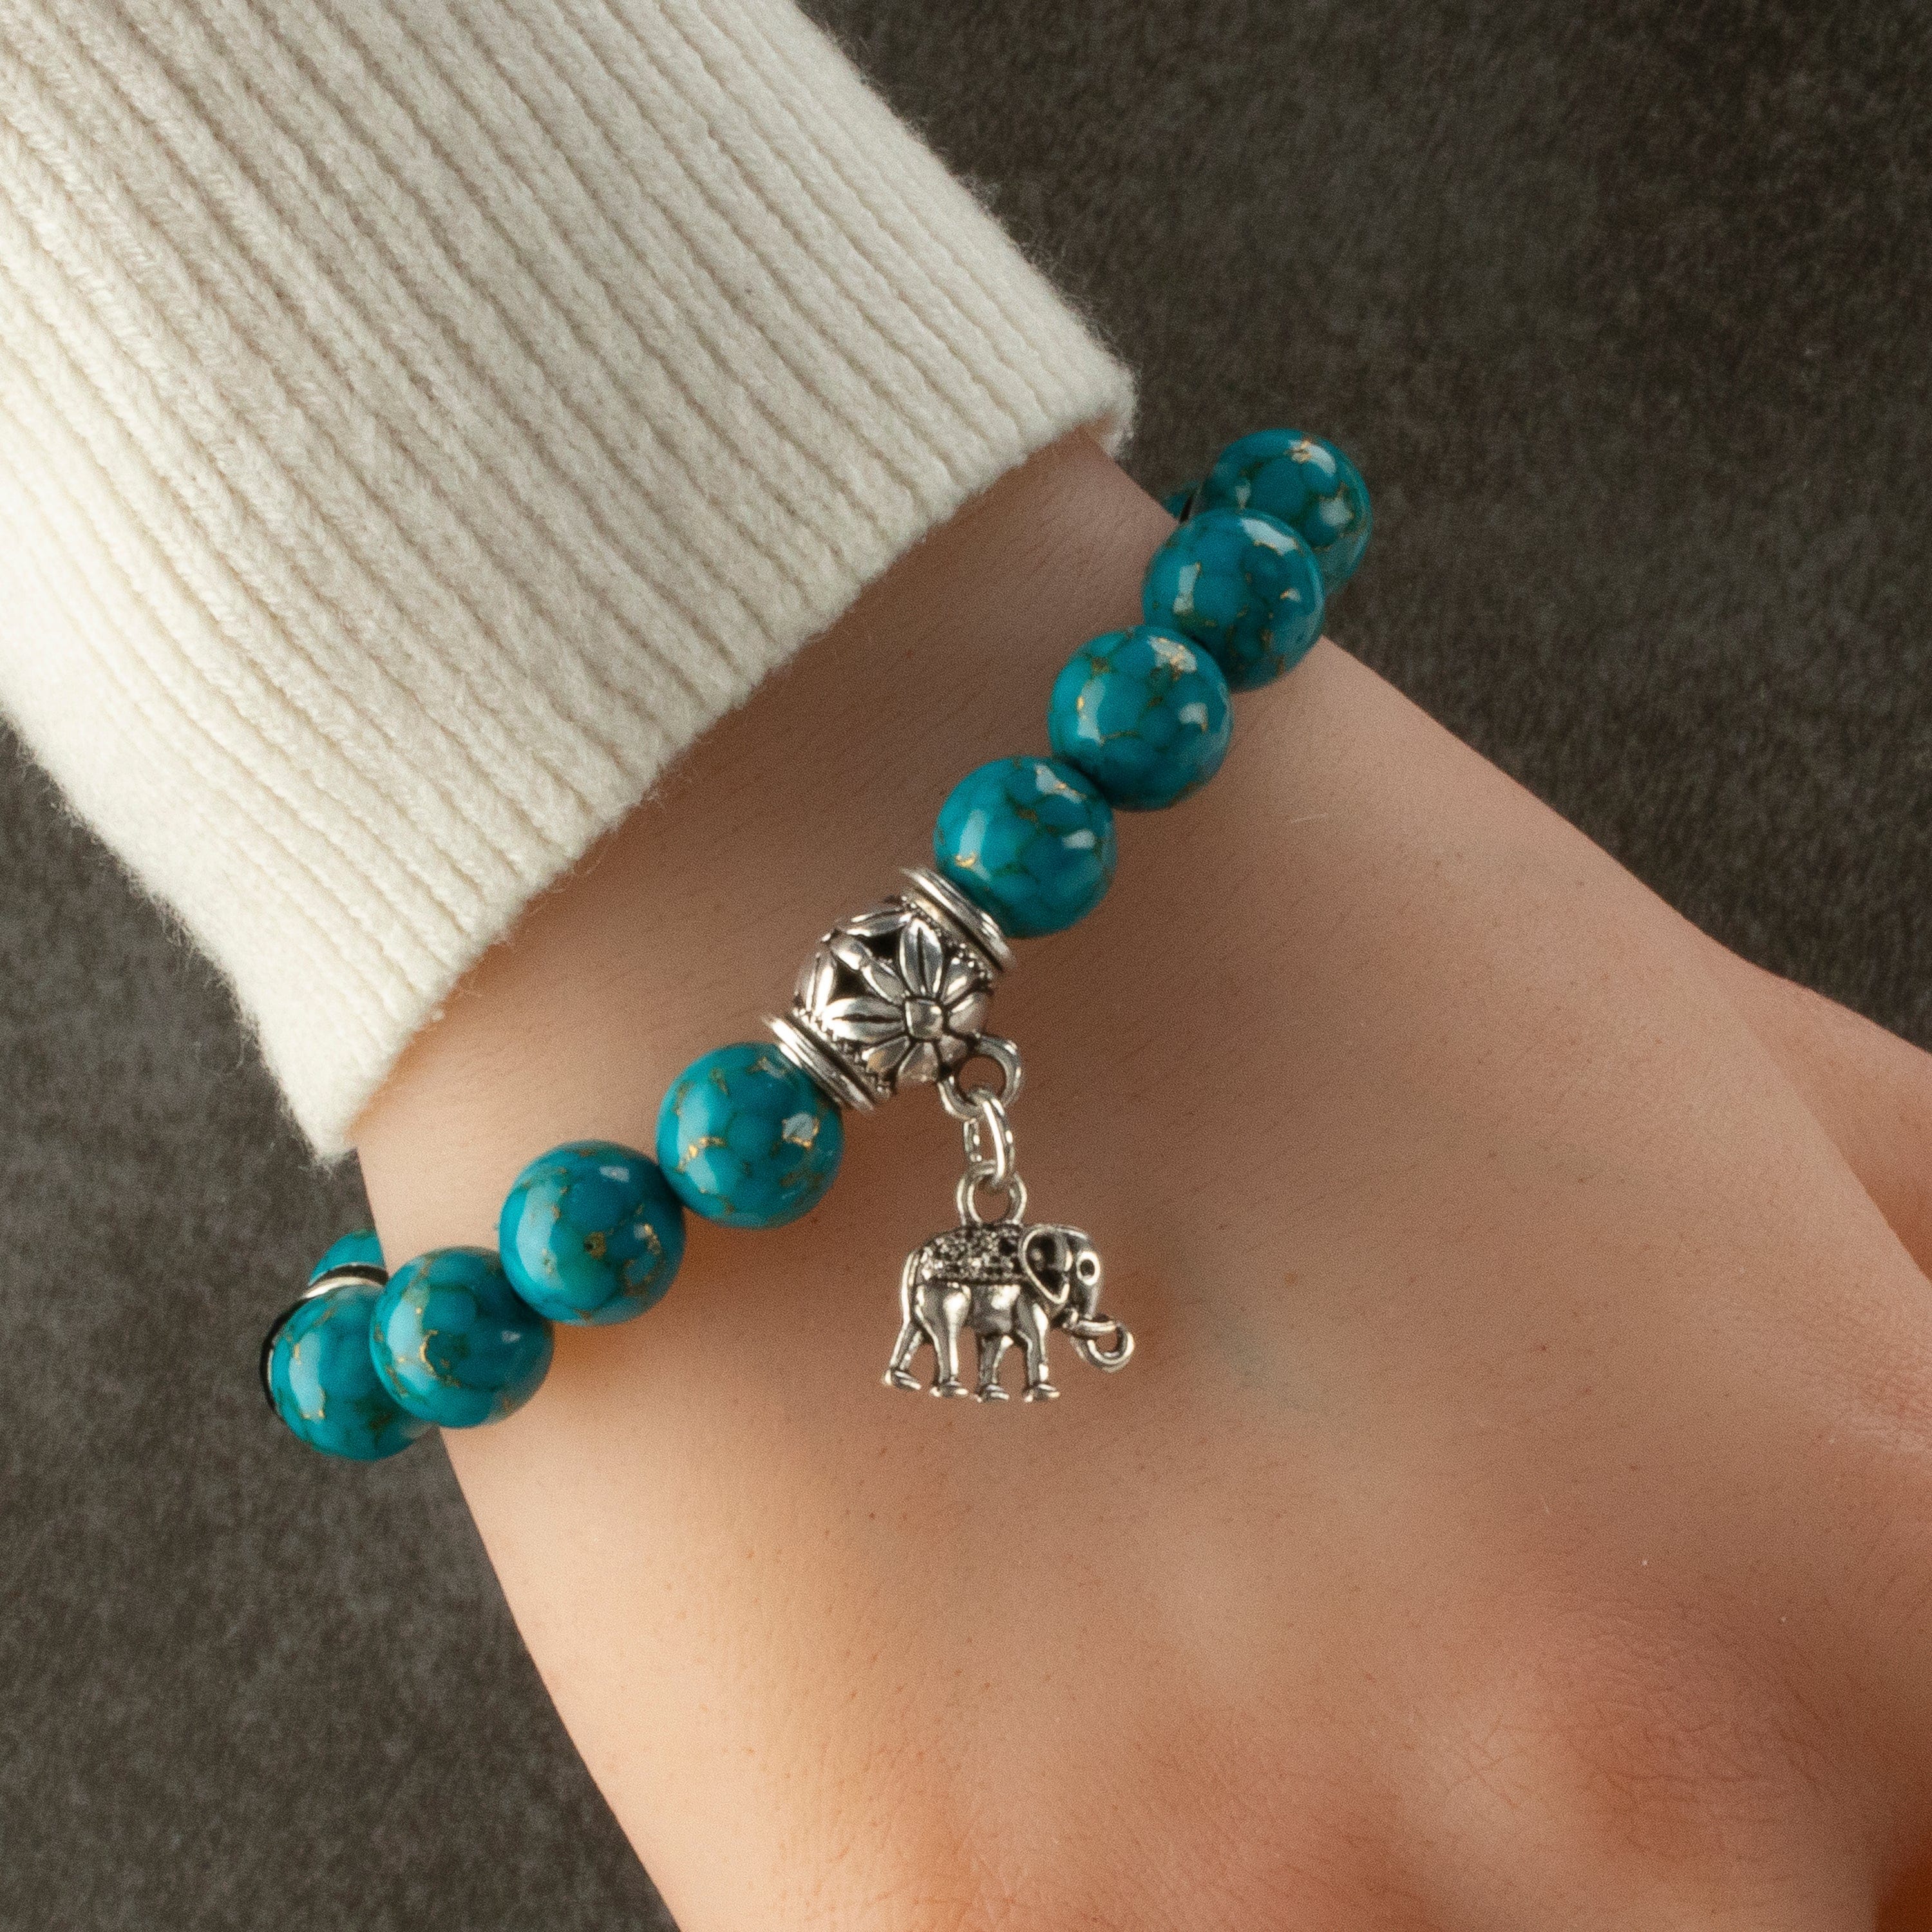 Kalifano Gemstone Bracelets Turquoise 10mm Gemstone Elastic Bead Bracelet with Elephant Accent Bead RED-BGP-074